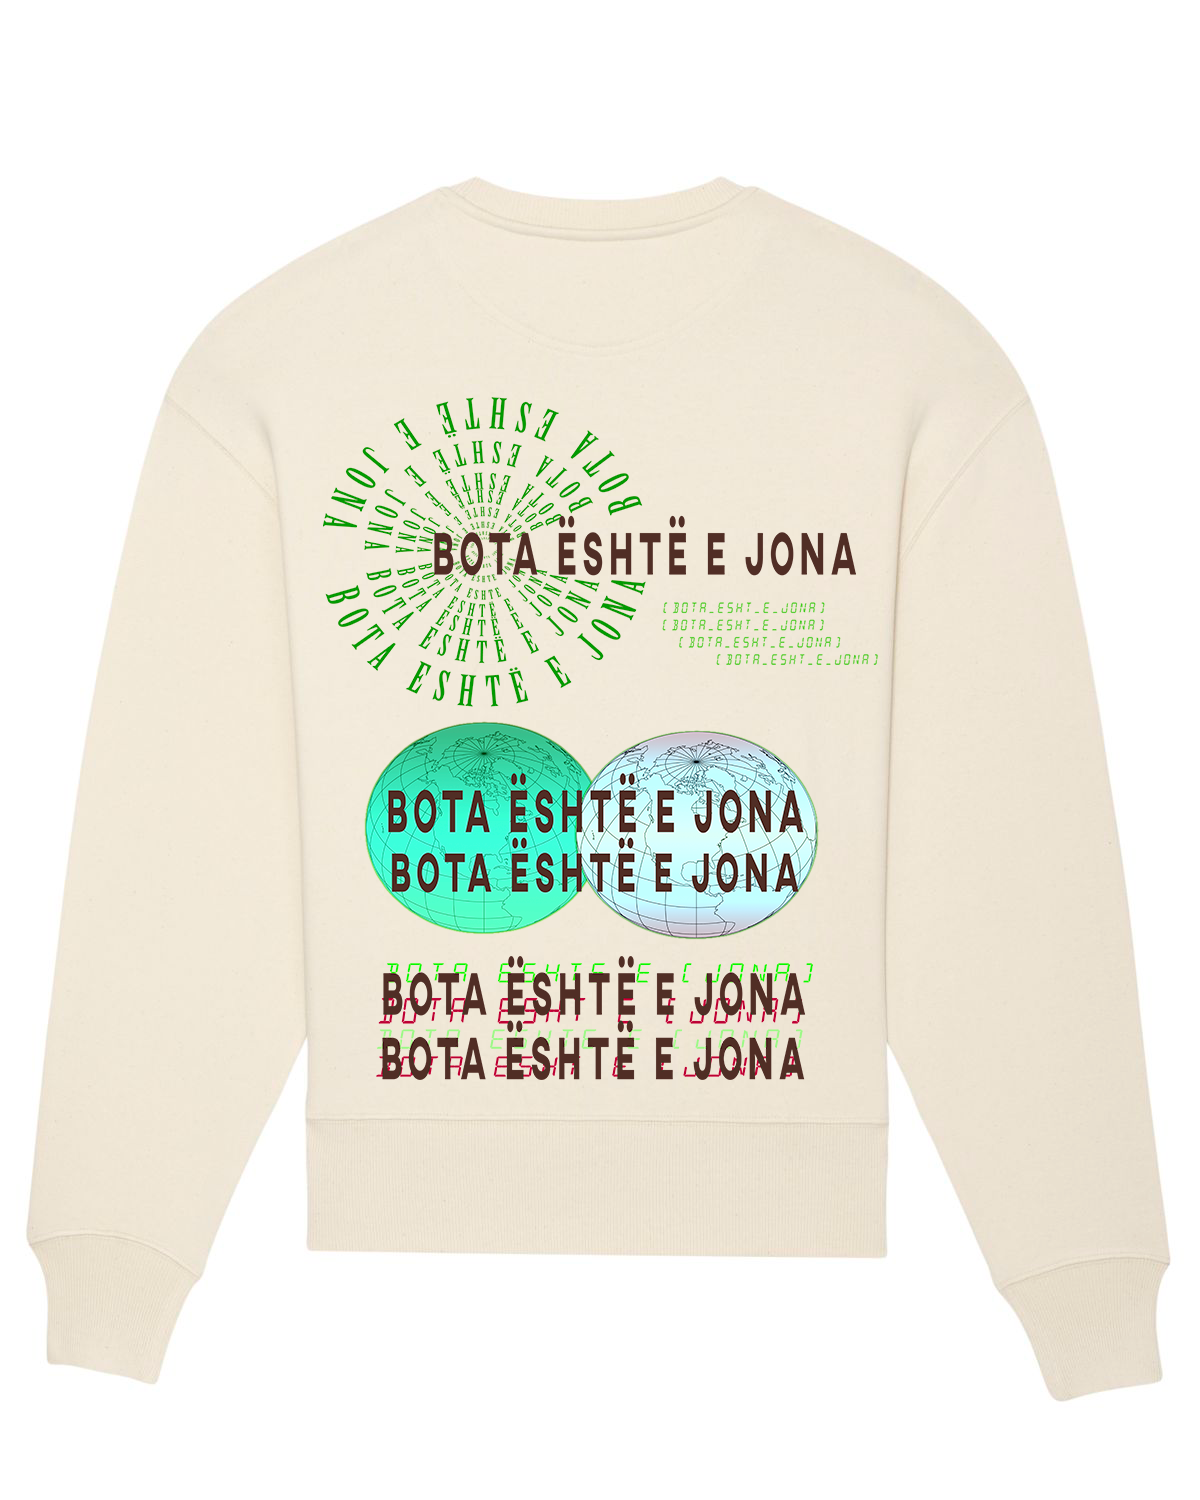 Bota Është e Jona - Organic Crewneck Unisex Sweatshirt